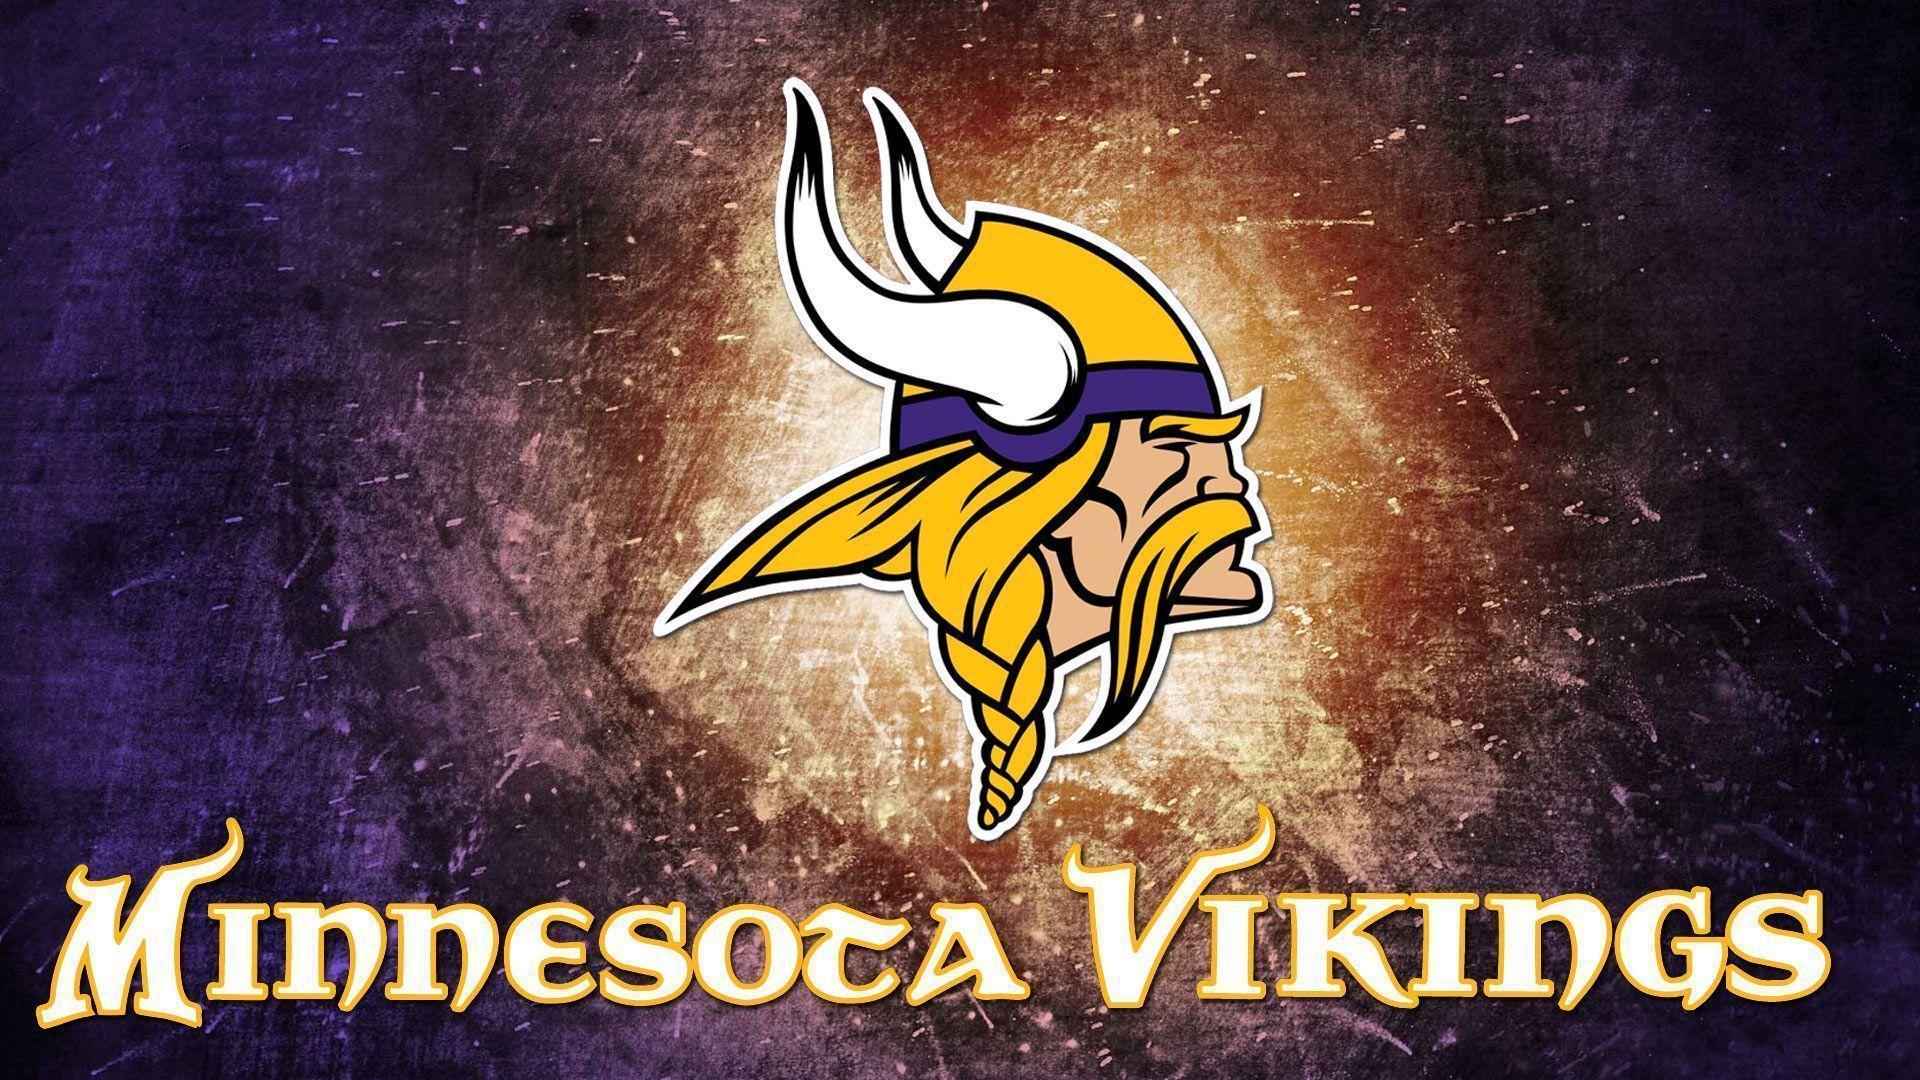 Download Minnesota Vikings logo HD 1080p Wallpaper size 1920X1080